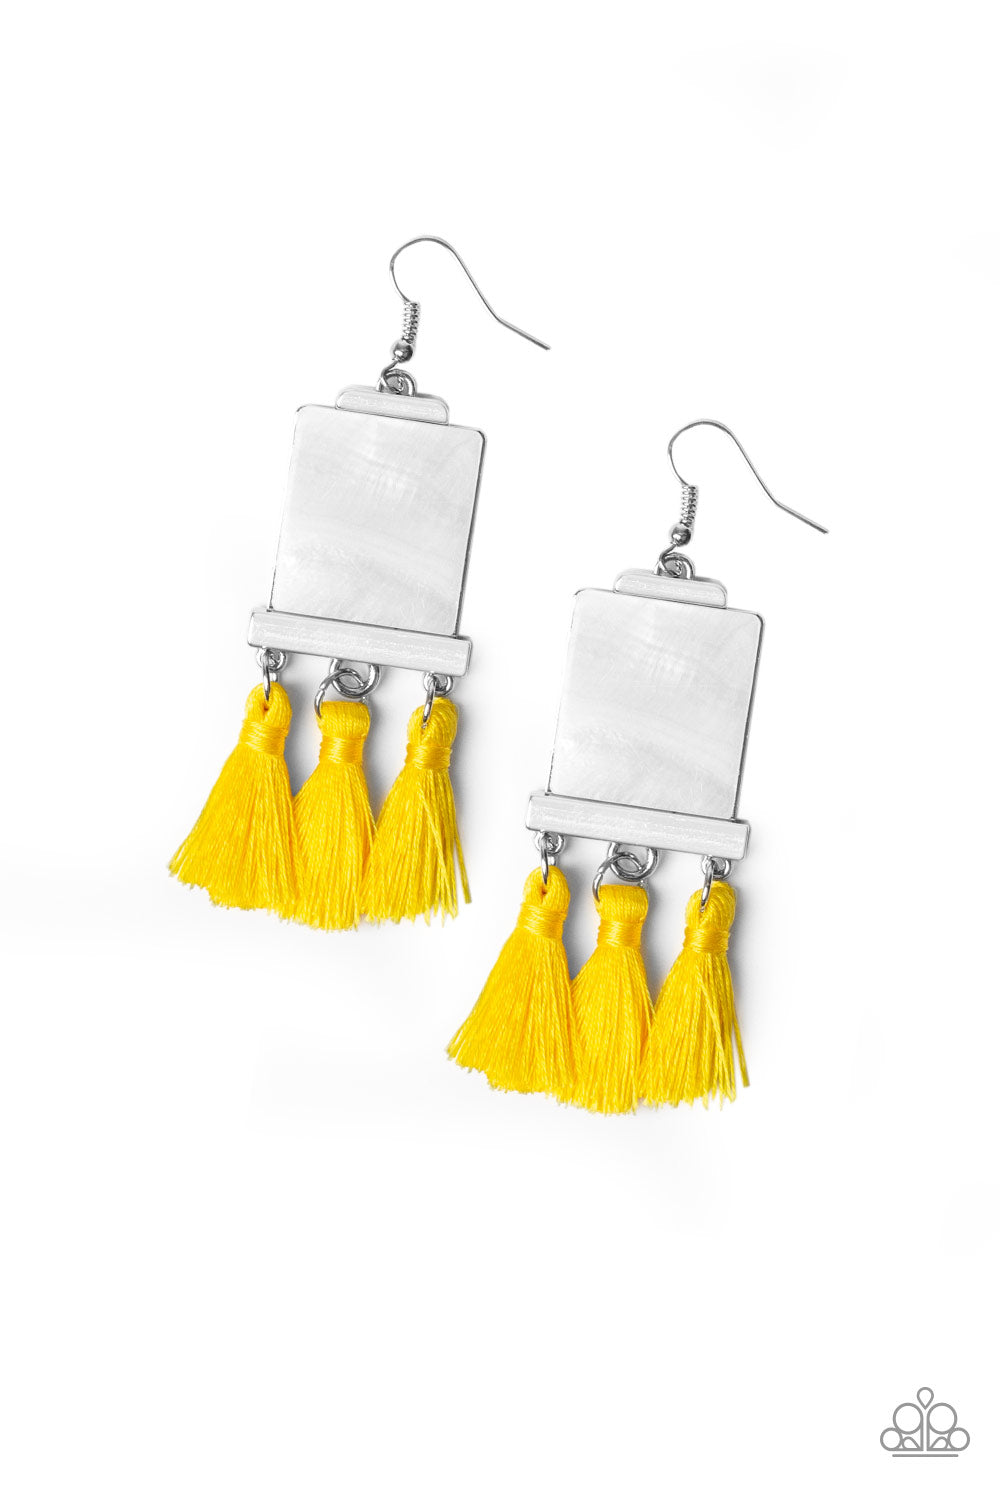 Tassel Retreat - Yellow earrings